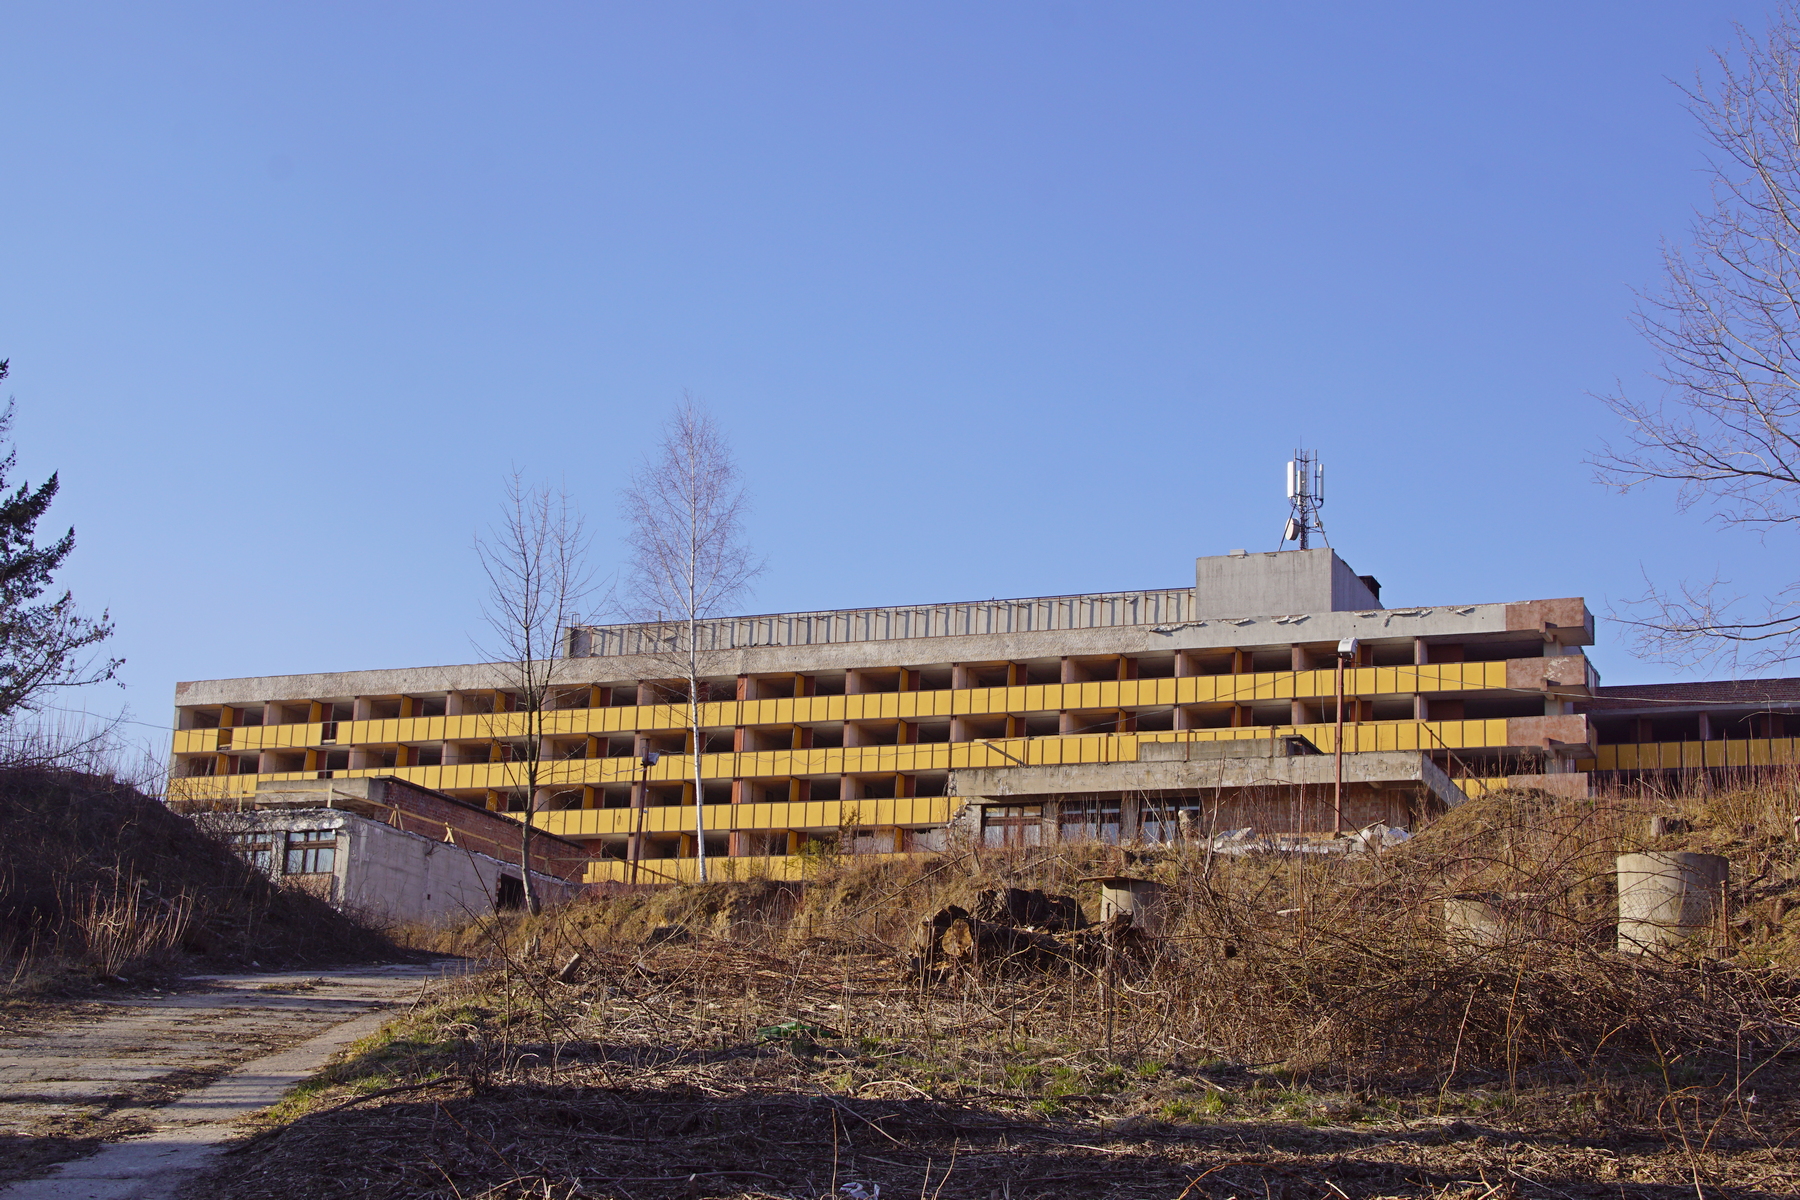 Ma 300 pokoi i od 30 lat stoi pusty. Niedokończony budynek sanatorium zmienia się w hotel (zdjęcia)